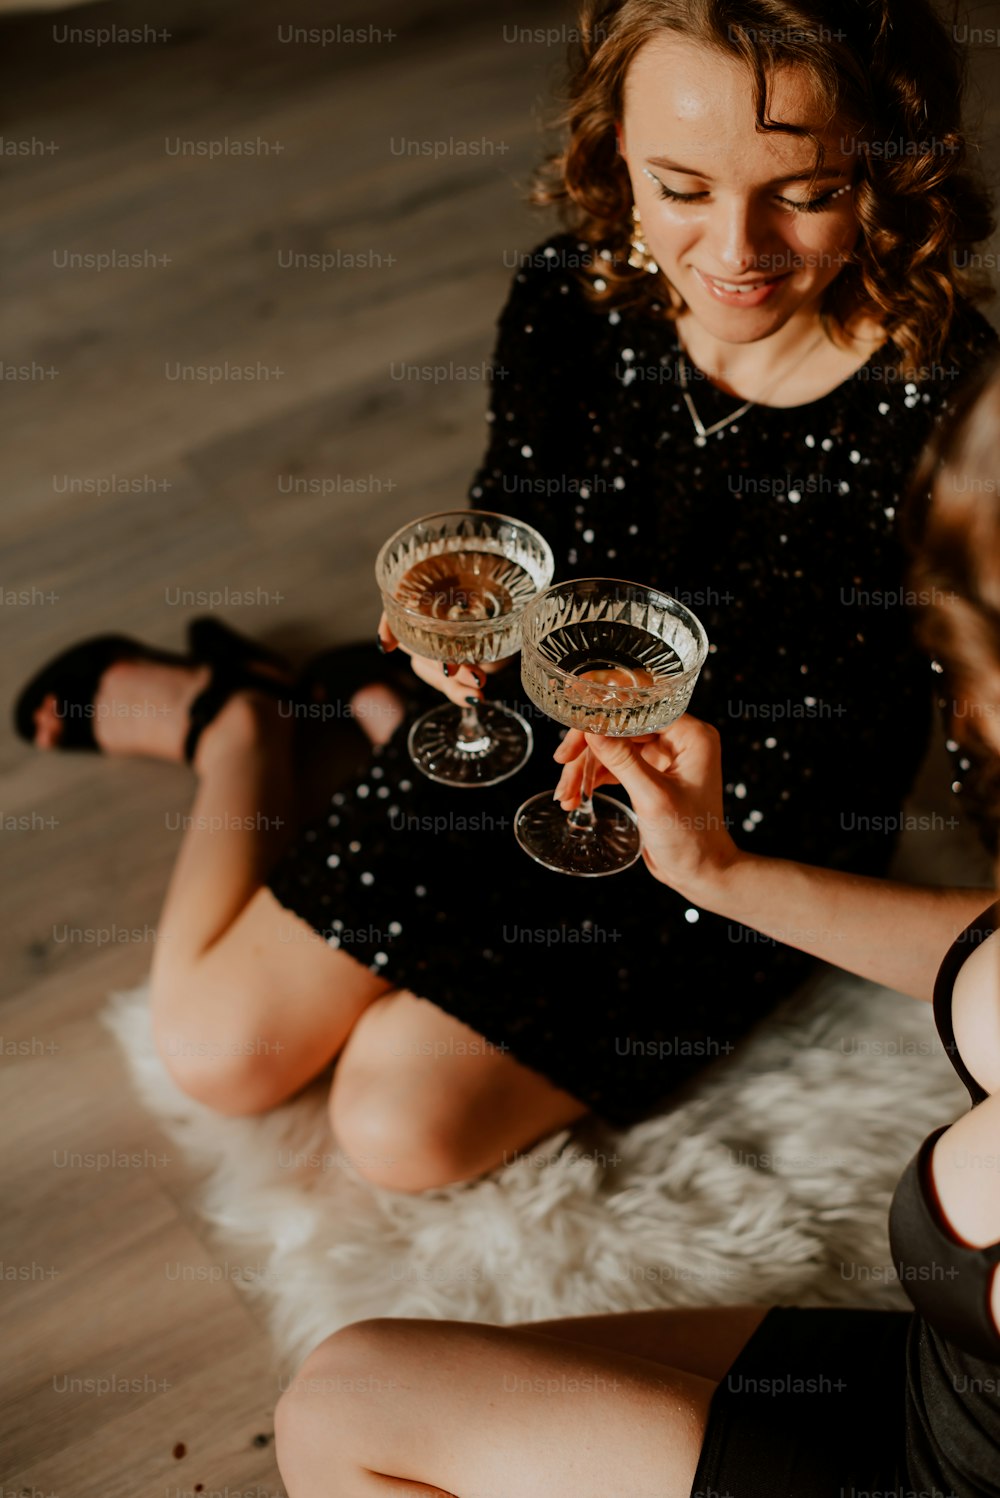 두 개의 와인잔을 들고 바닥에 앉아 있는 여자